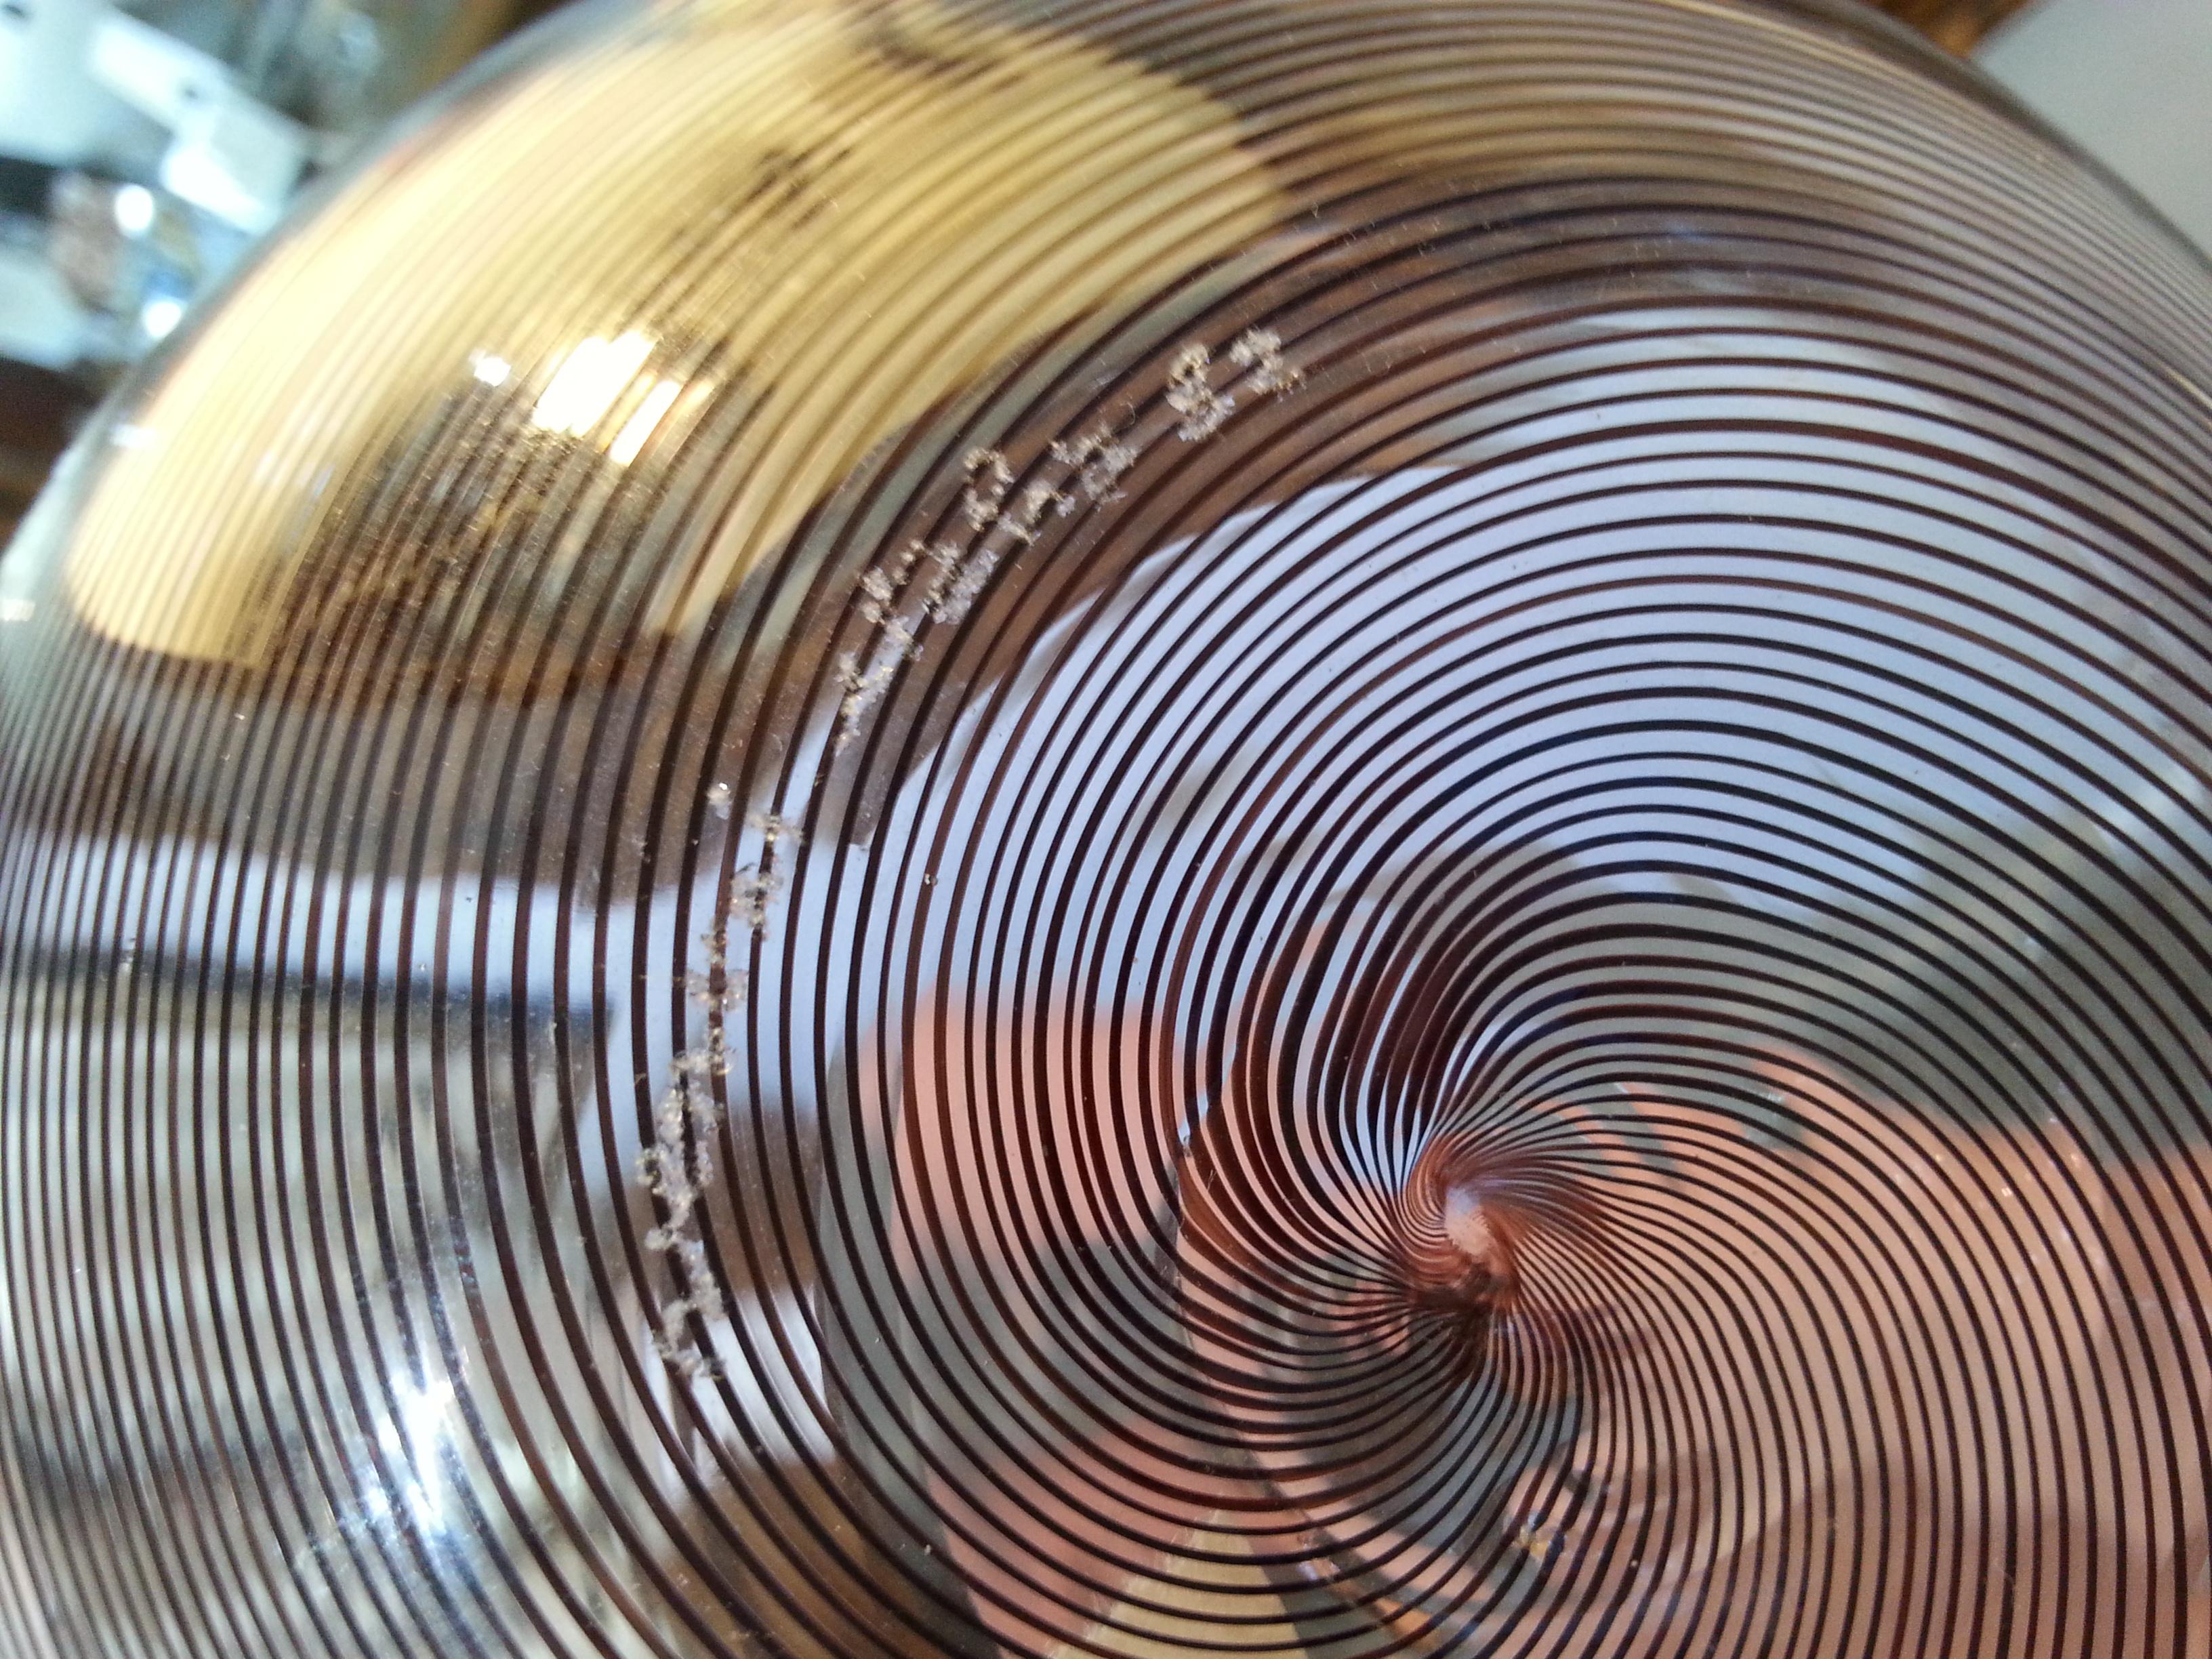 venini glass bowl